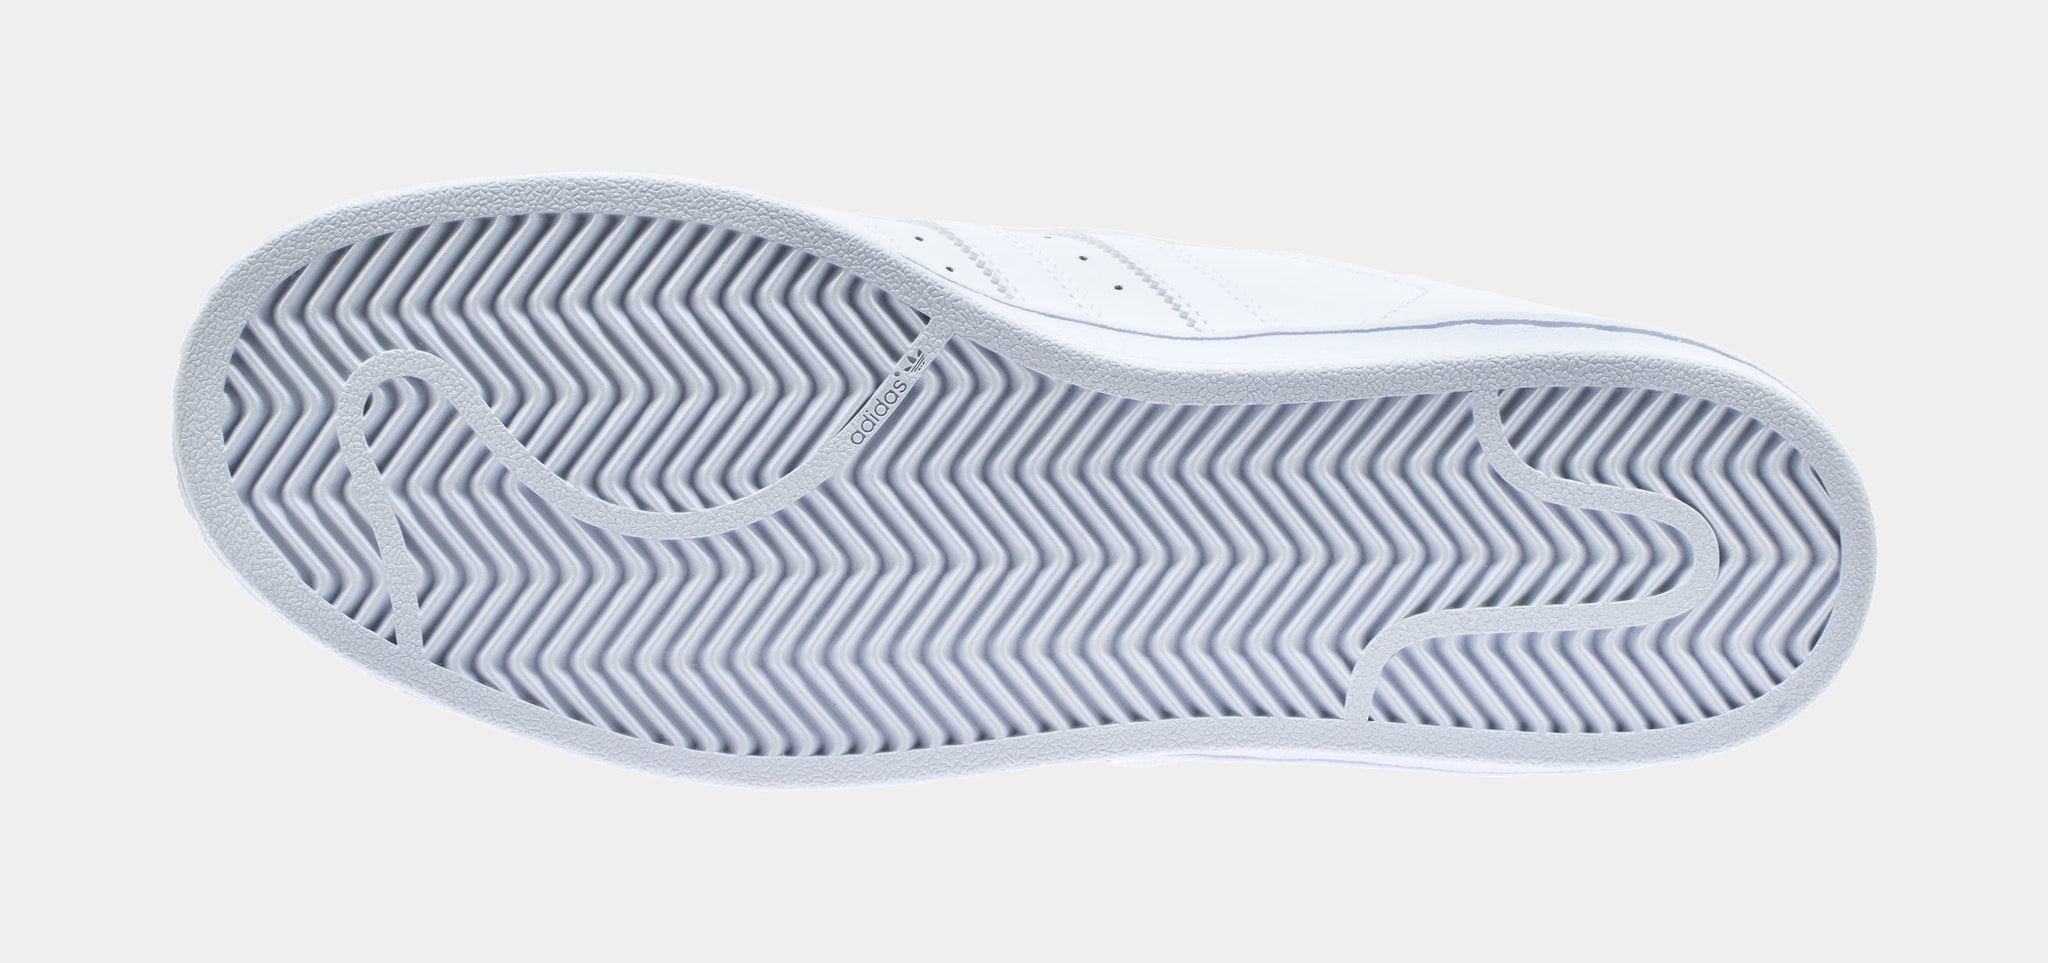 adidas Originals Shell Toe Shoes for Men